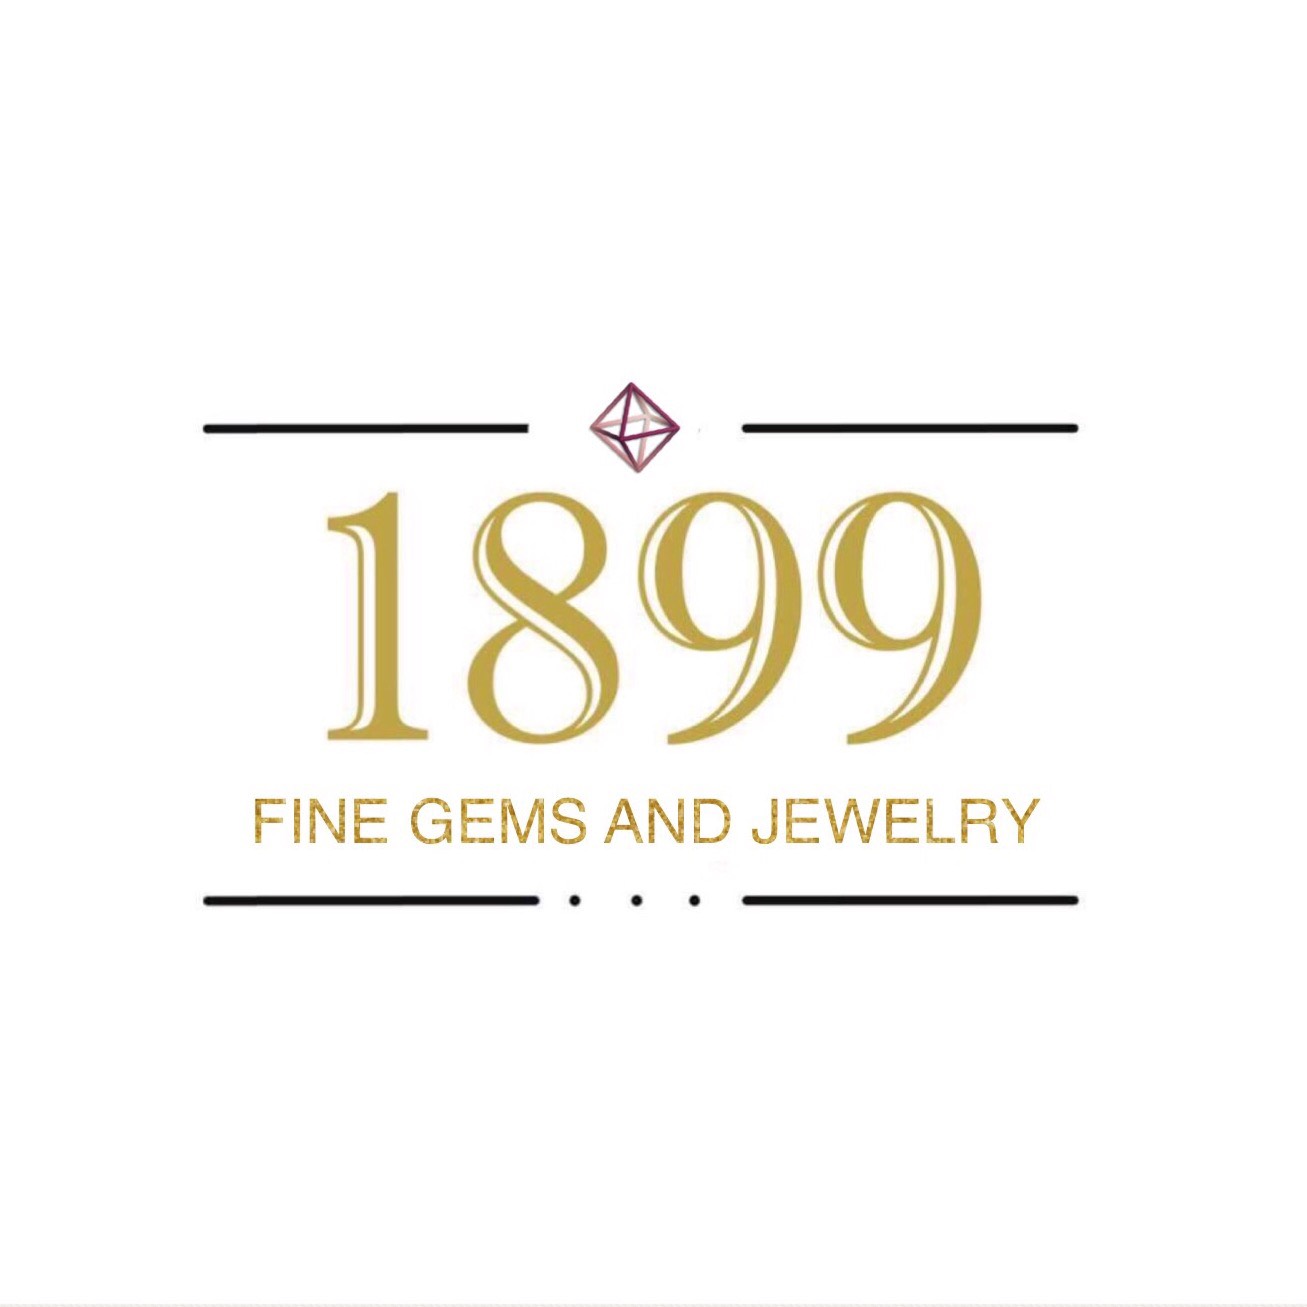 บริษัท 1899 เจมส์ จำกัด logo โลโก้